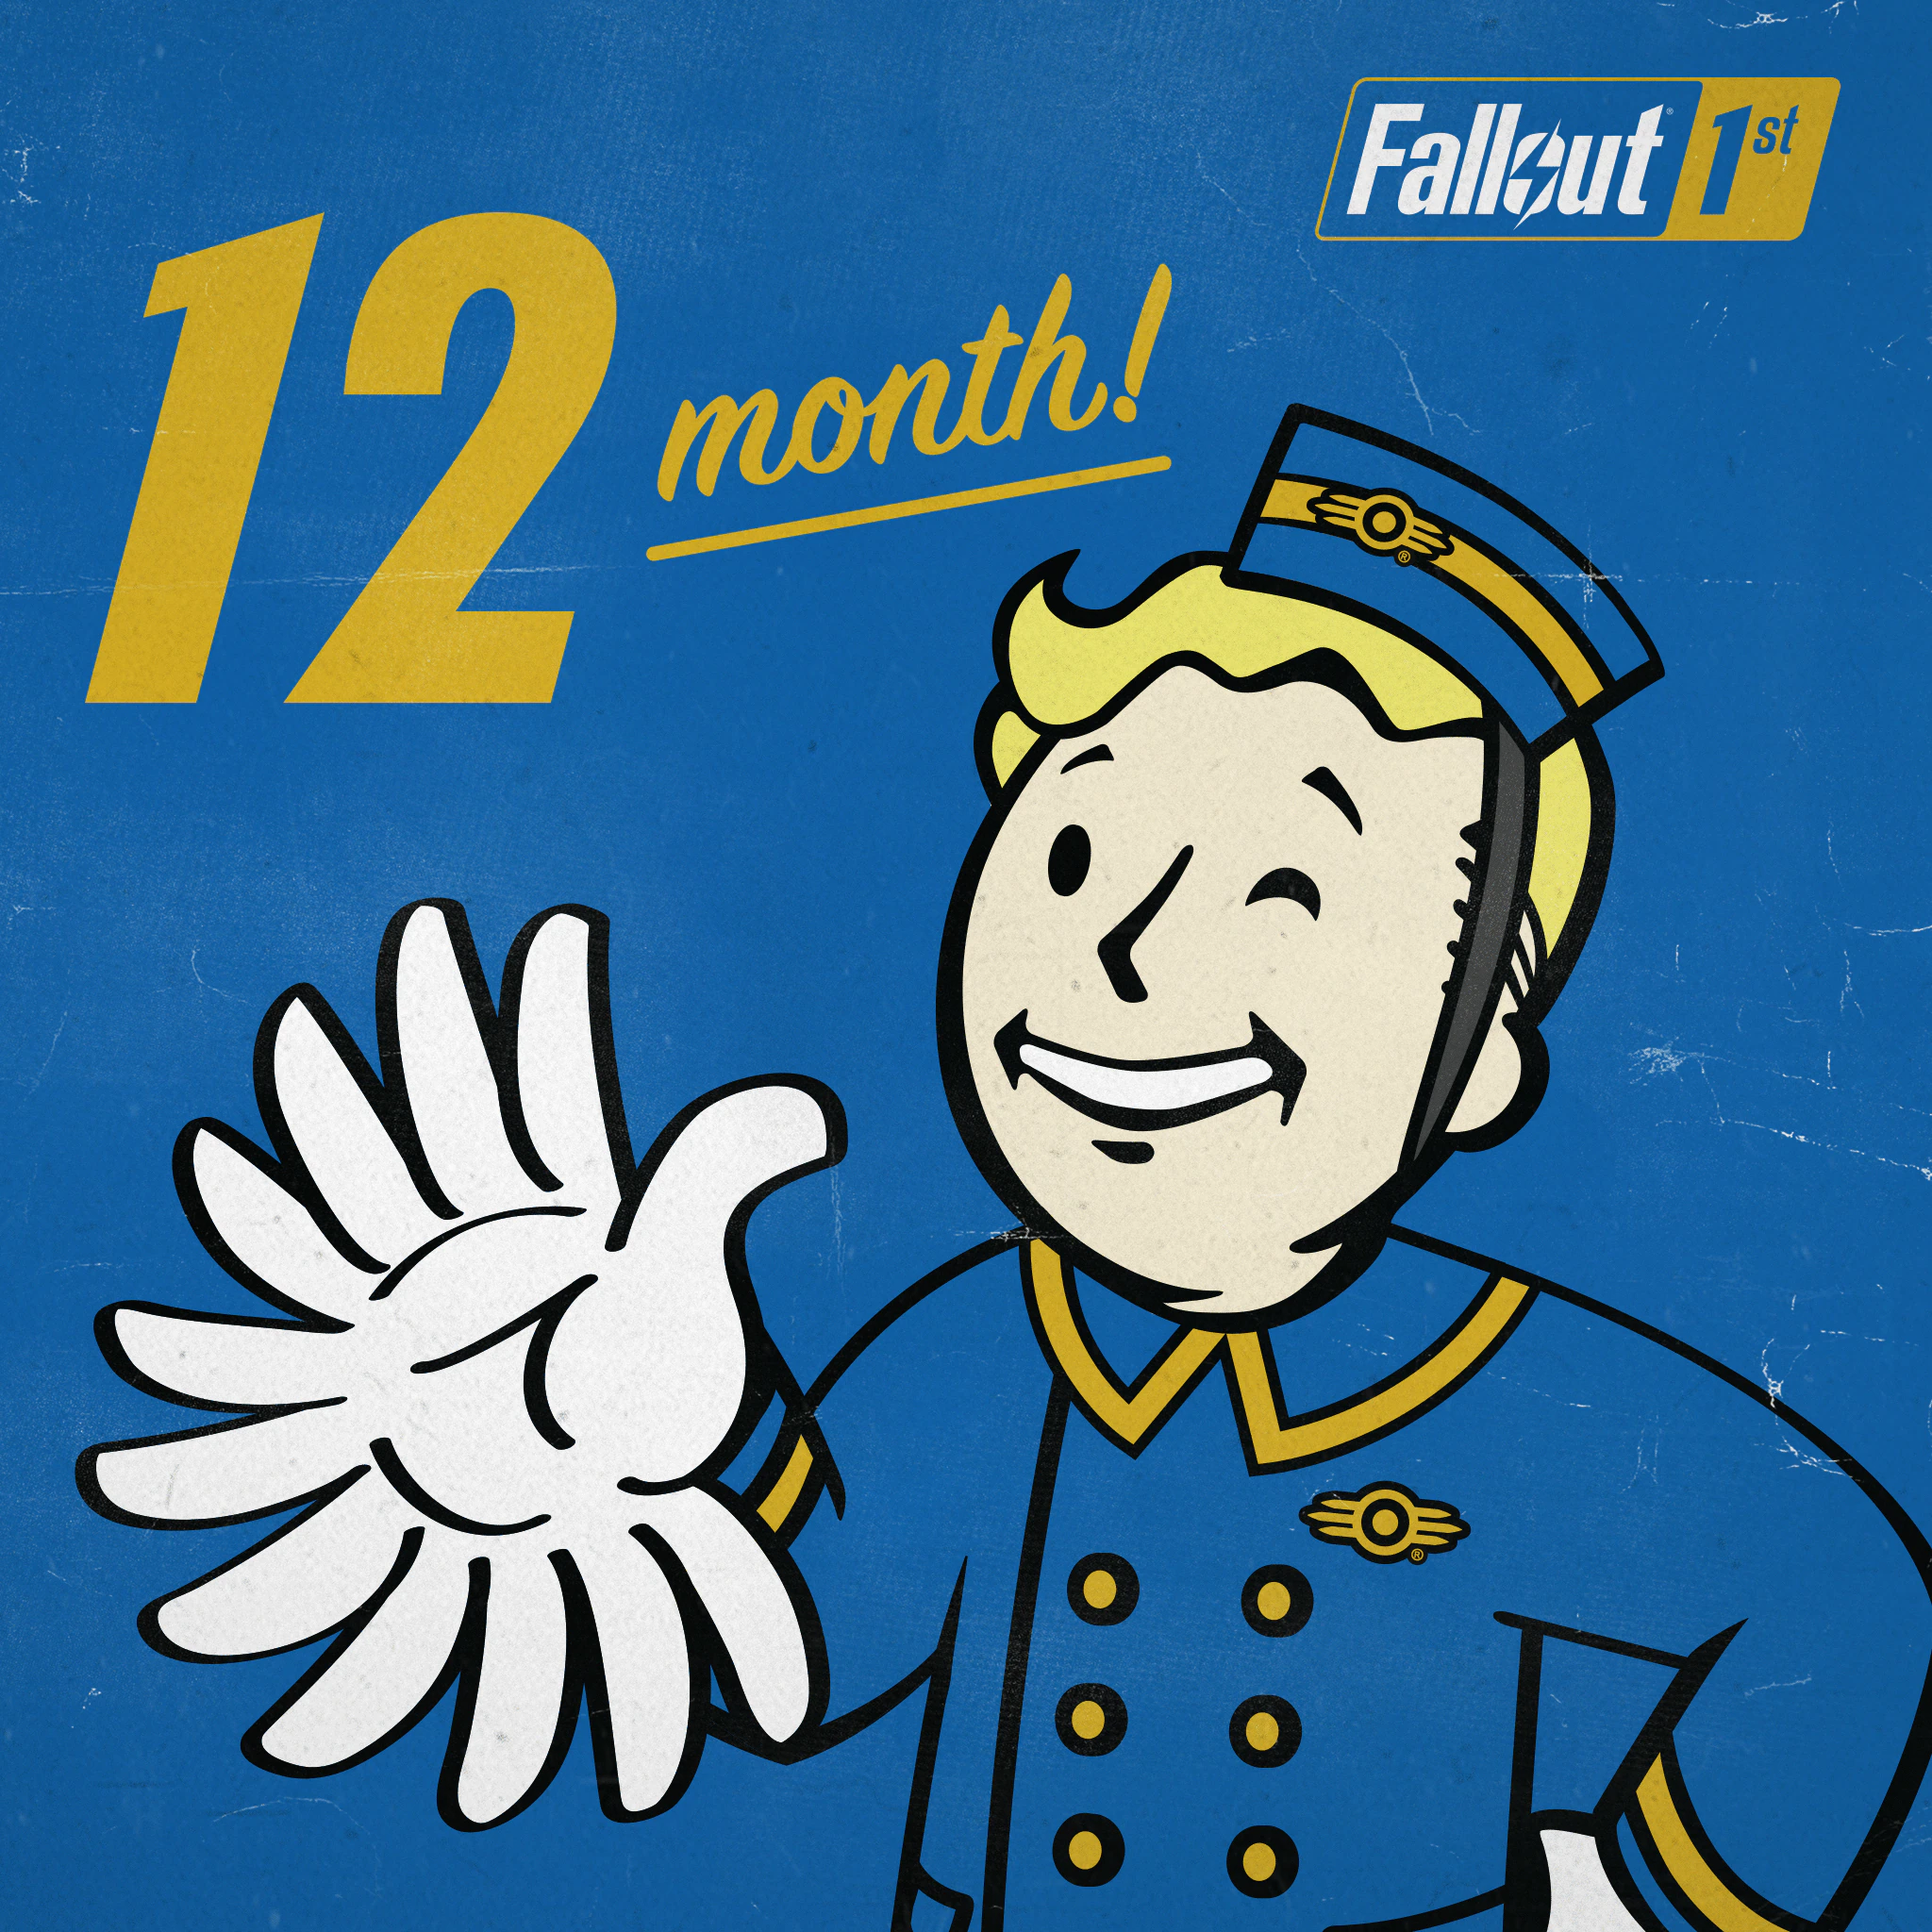 Купить фоллаут 76. Fallout 76. Fallout 76 обложка. Подпишись Fallout. Складской строительный набор Fallout 76.